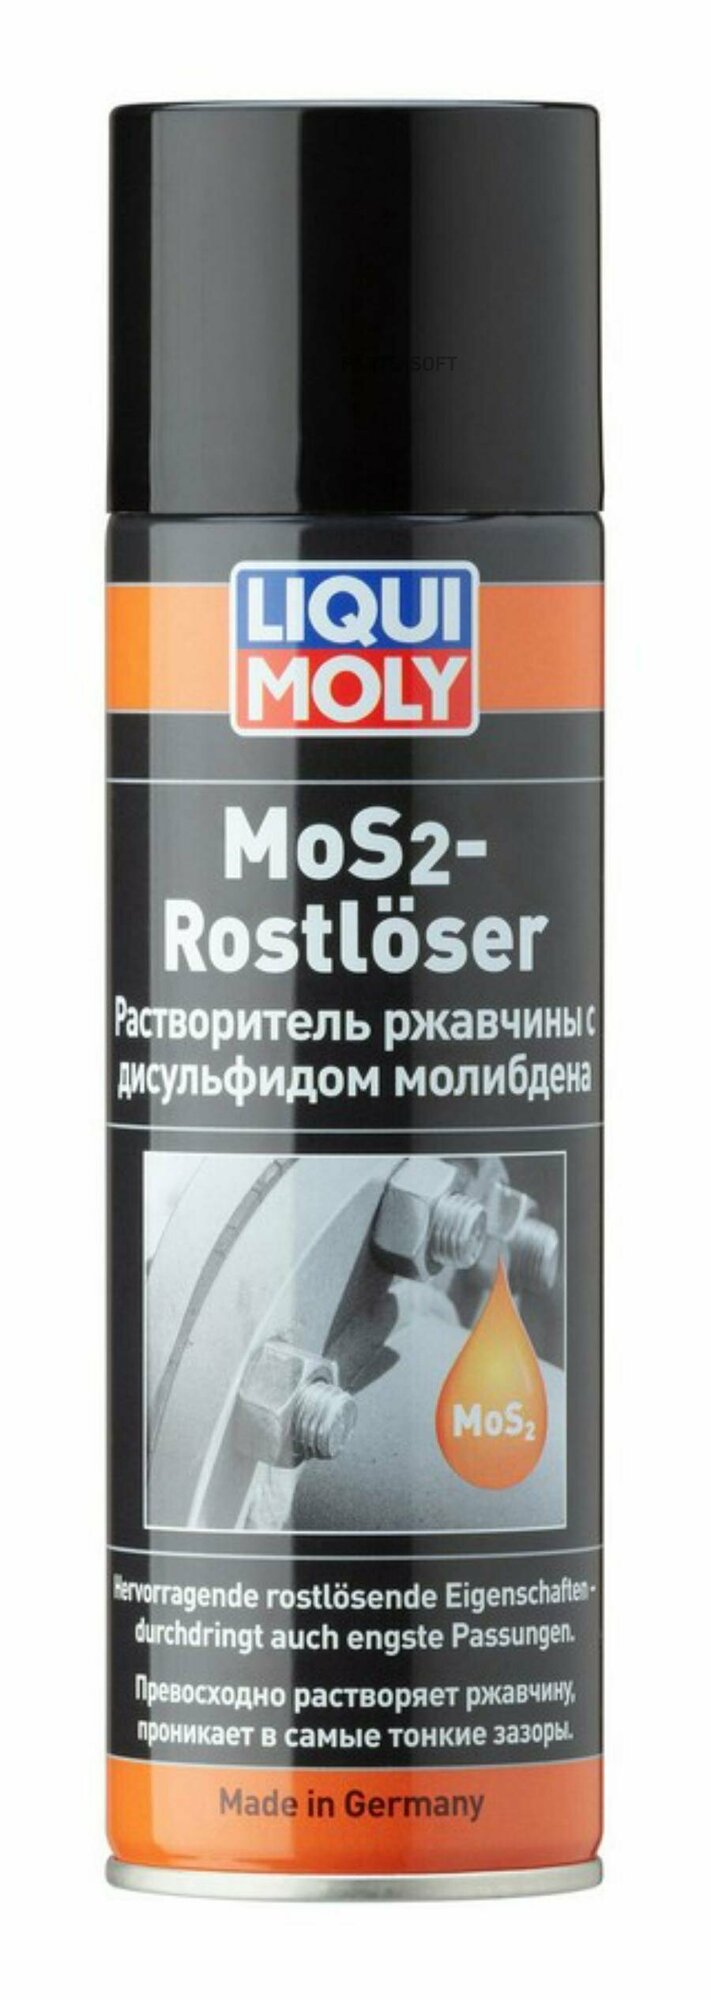 Растворитель ржавчины с дисульфидом молибдена MoS2-Rostloser 0,3L LIQUI MOLY / арт. 1986 - (1 шт)